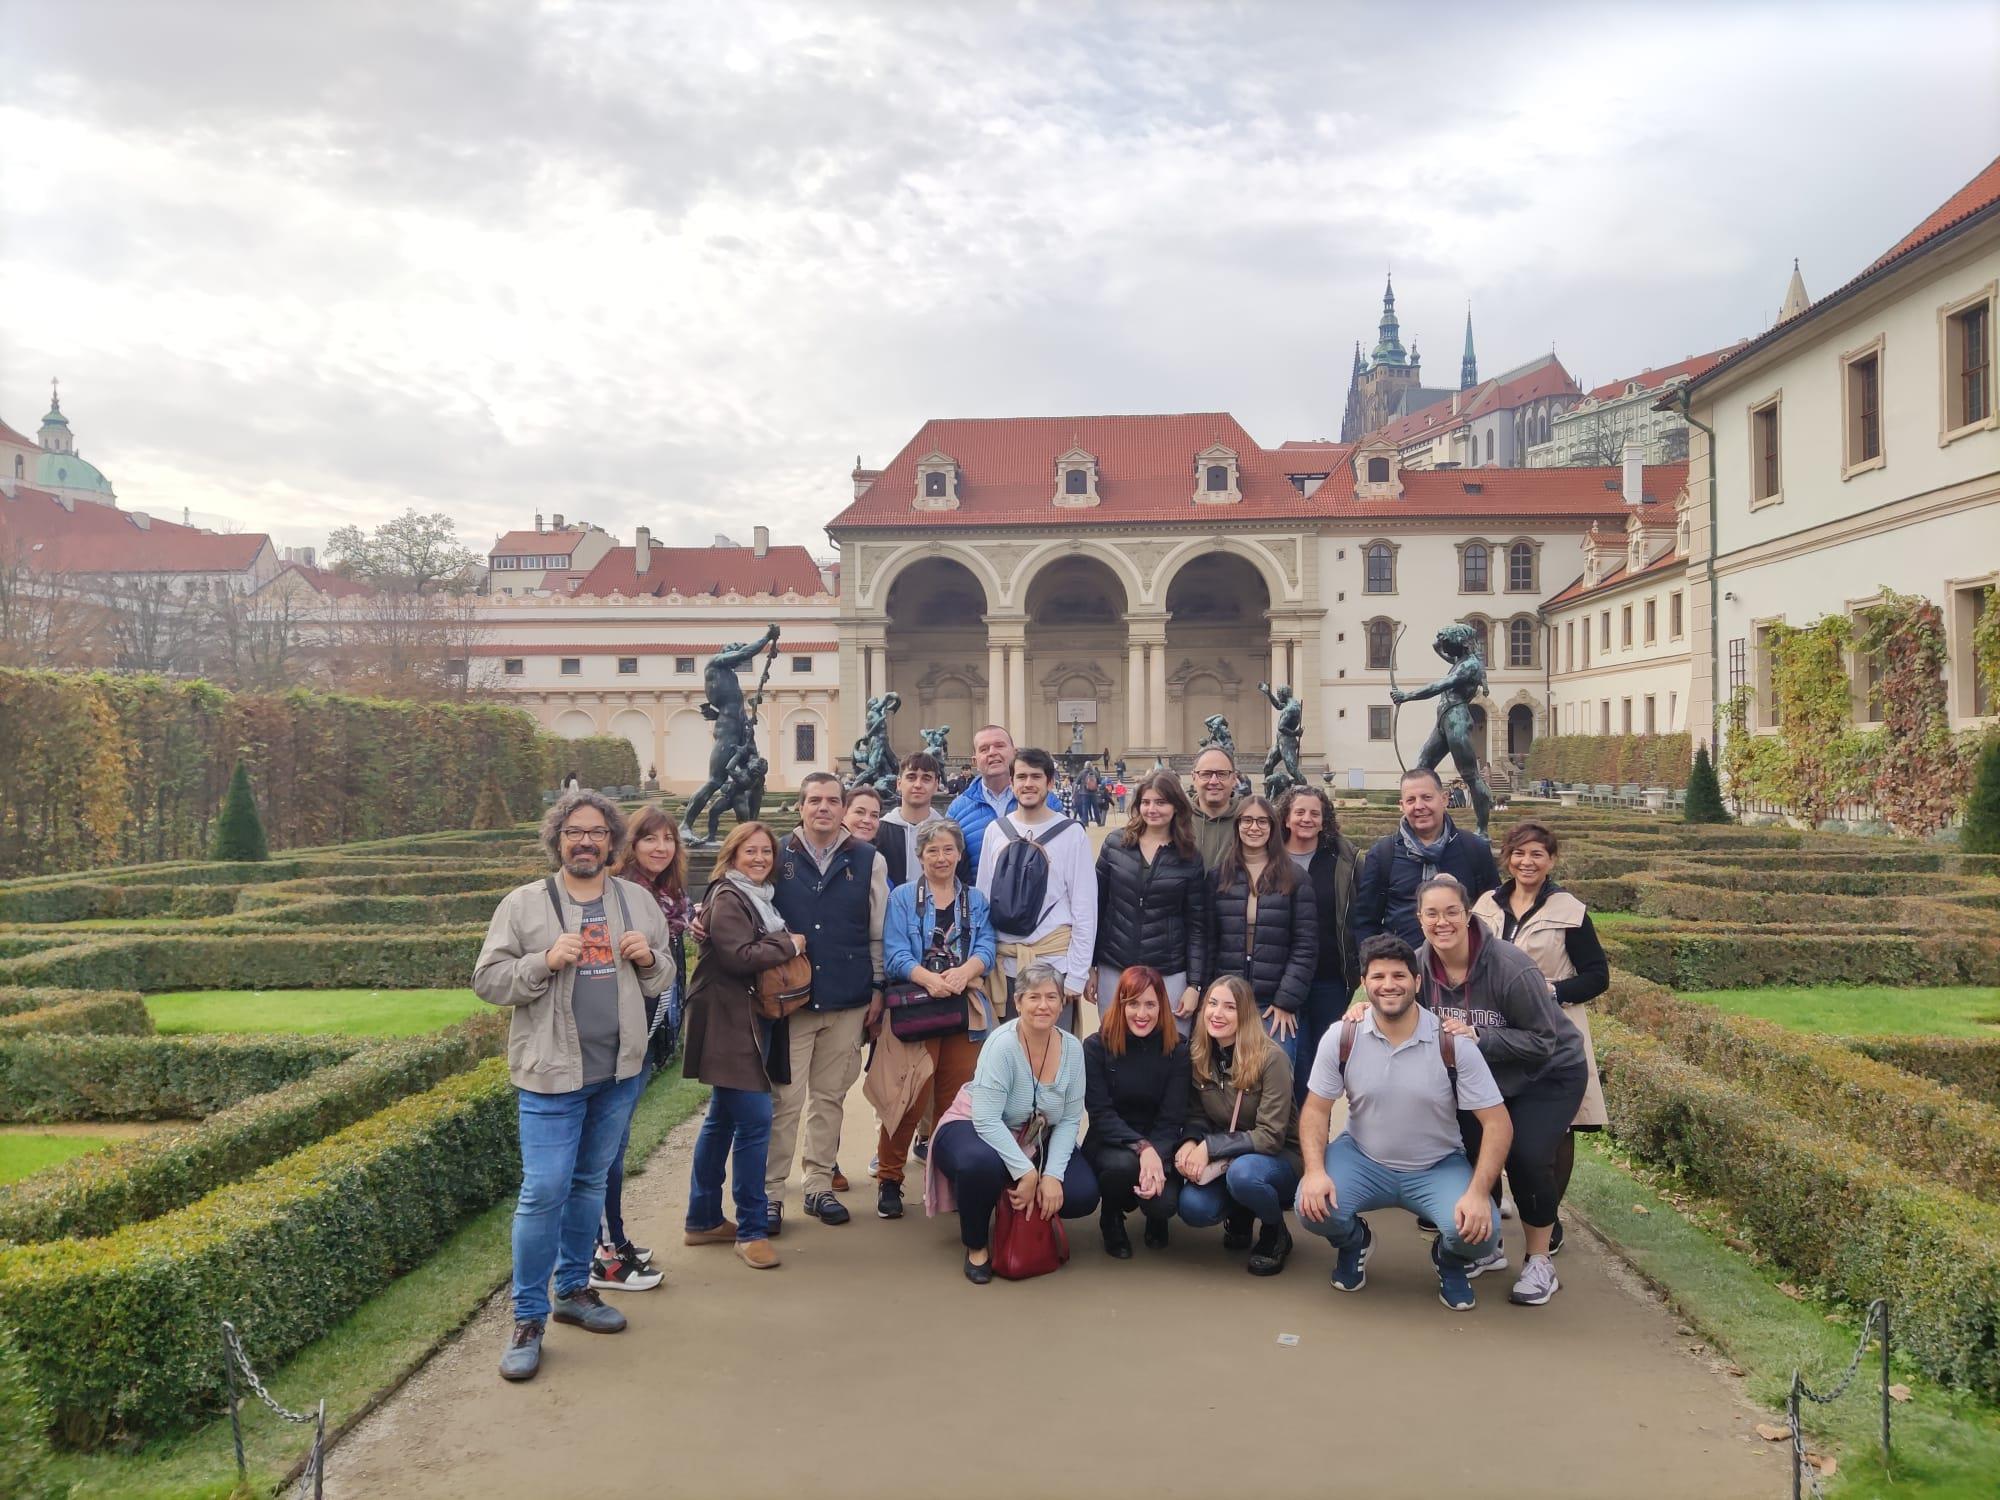 Imperial-Prague-Free-Walking-Tour-2